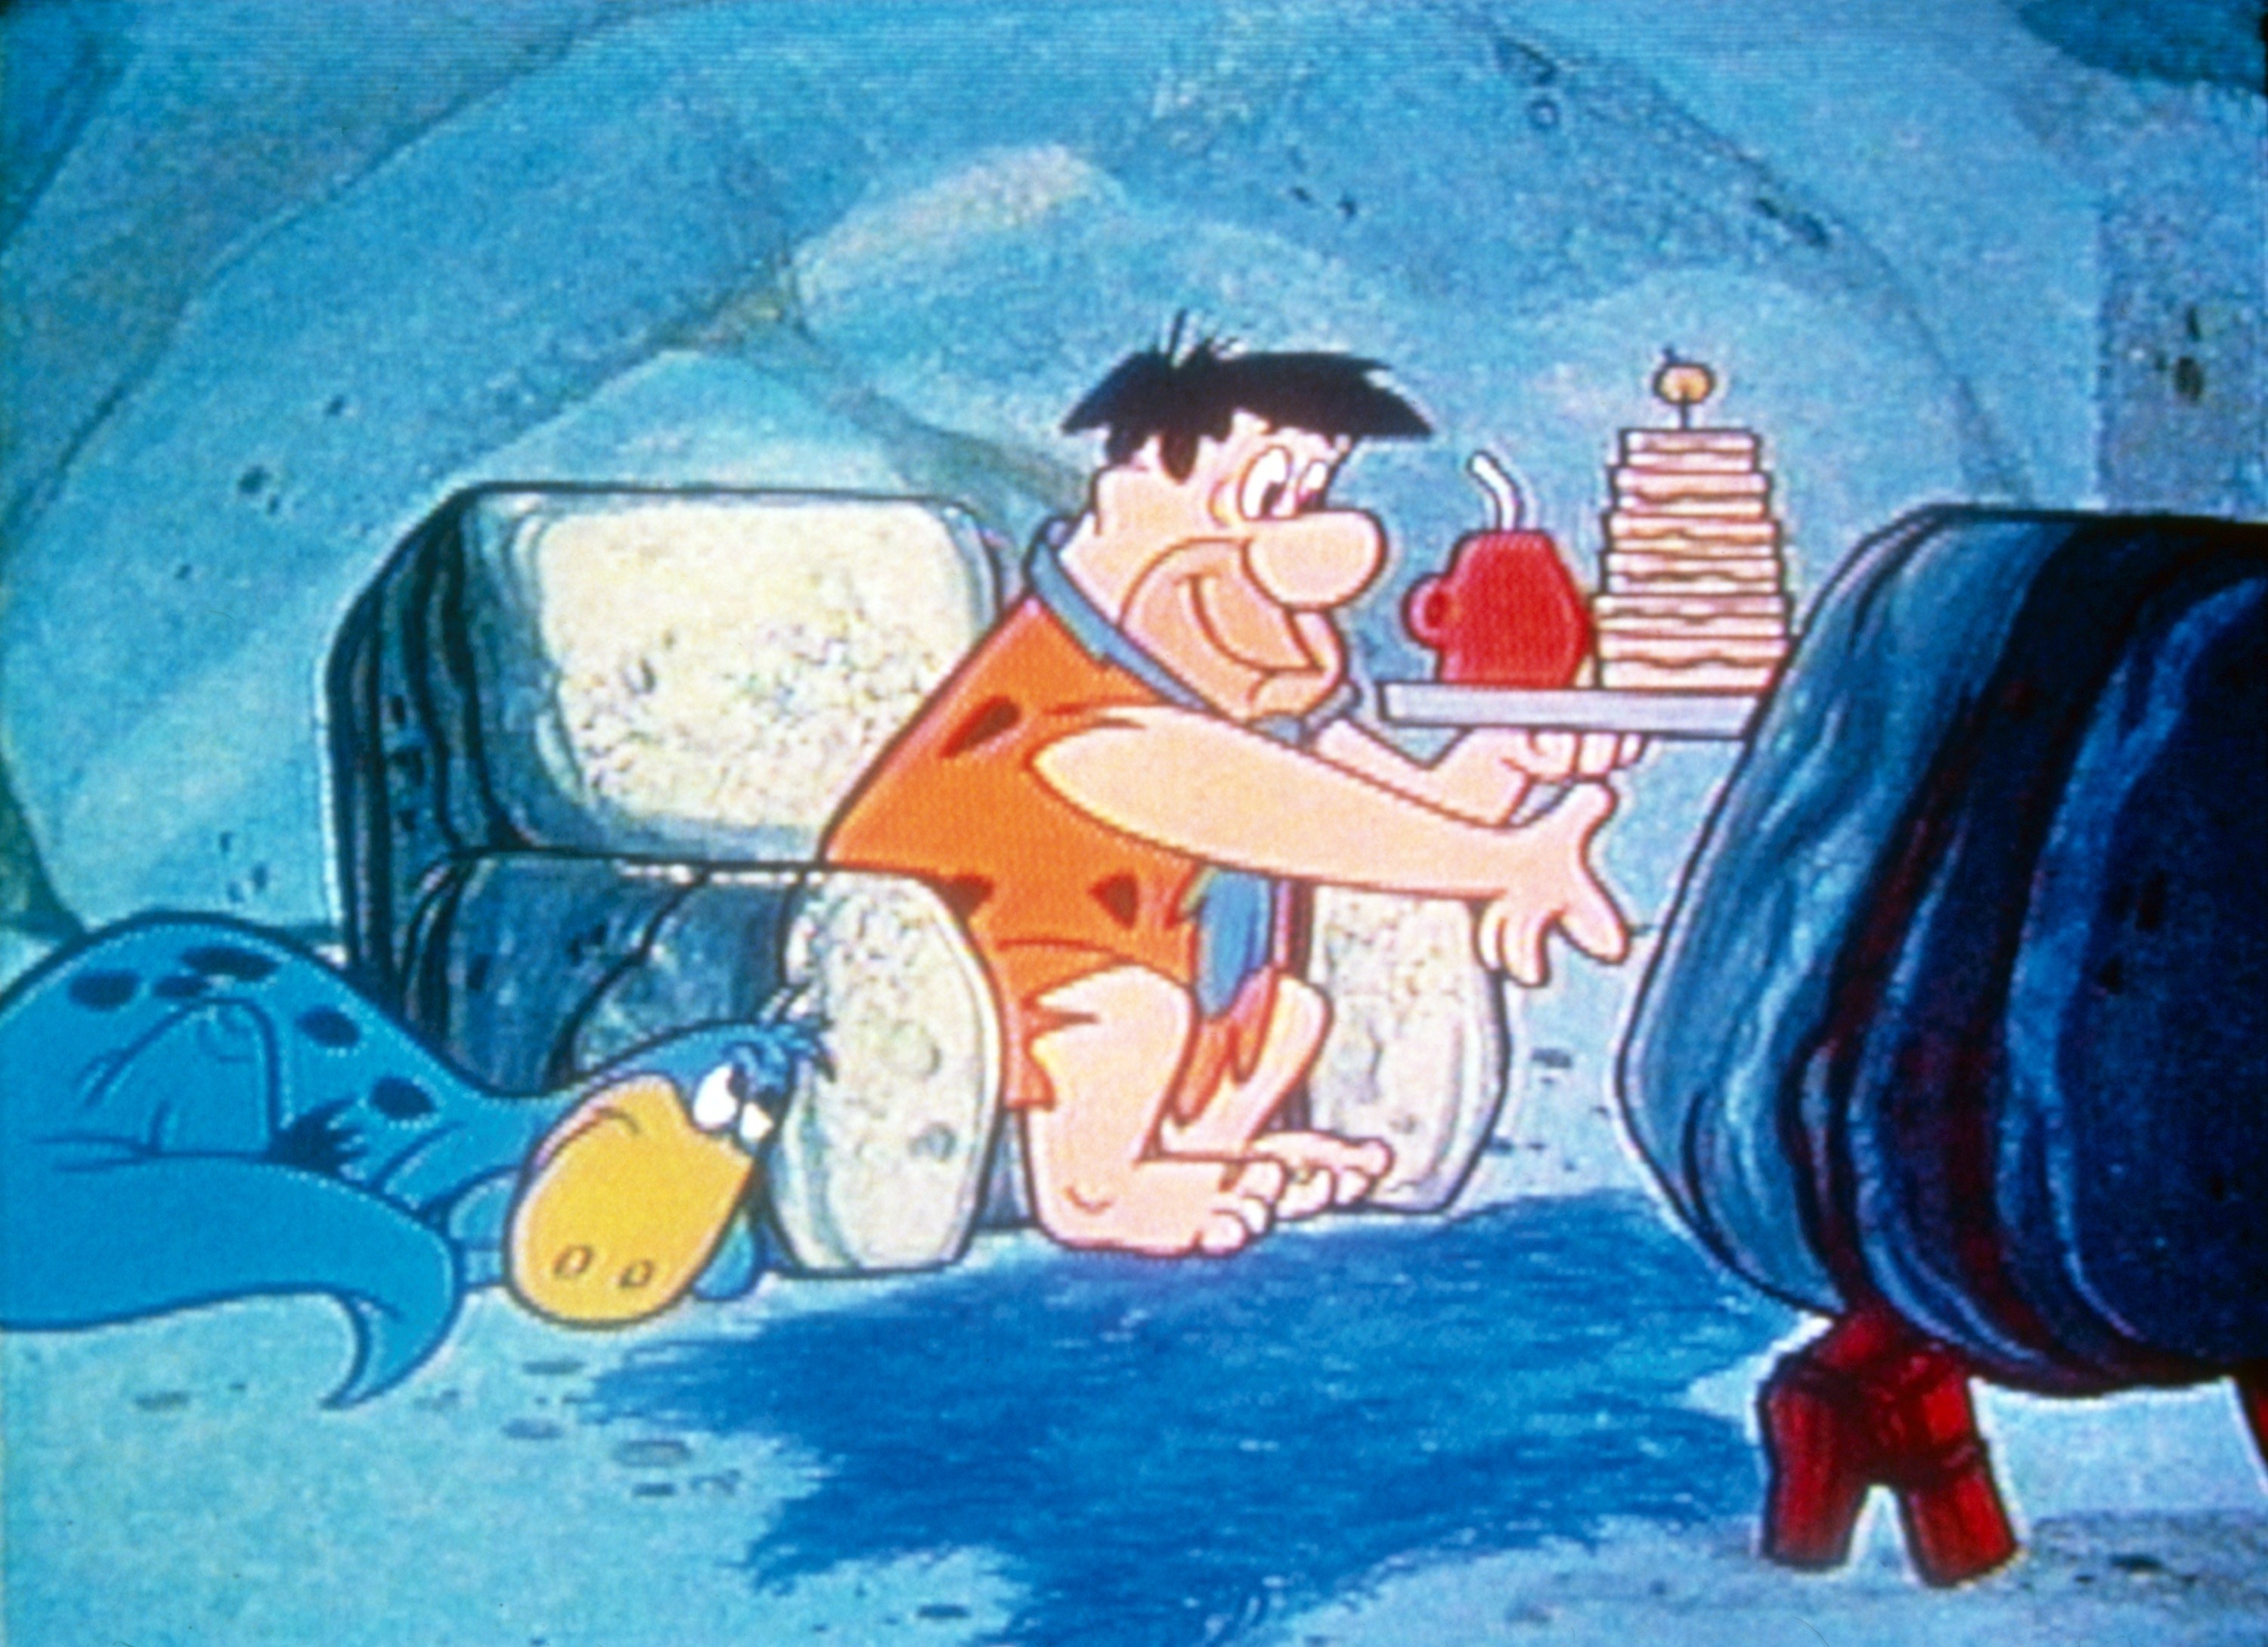 Fred Flintstone in The Flintstones